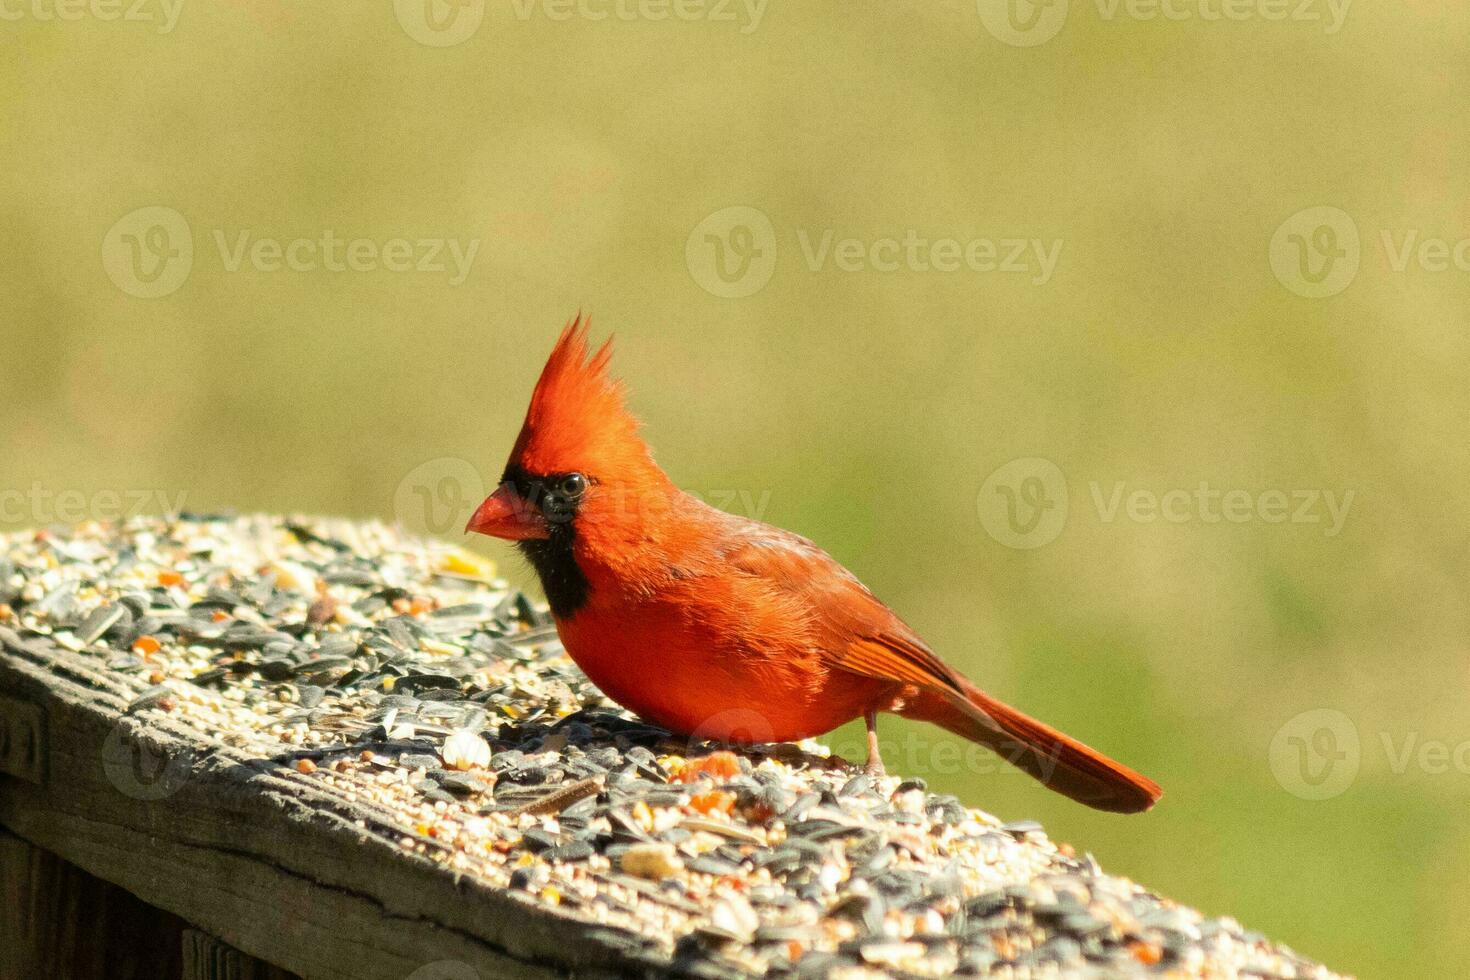 esta hermosa rojo cardenal llegó fuera a el marrón de madera barandilla de el cubierta para alimento. su hermosa mohawk en pie Derecho arriba con su negro mascarilla. esta pequeño aviar es rodeado por alpiste. foto